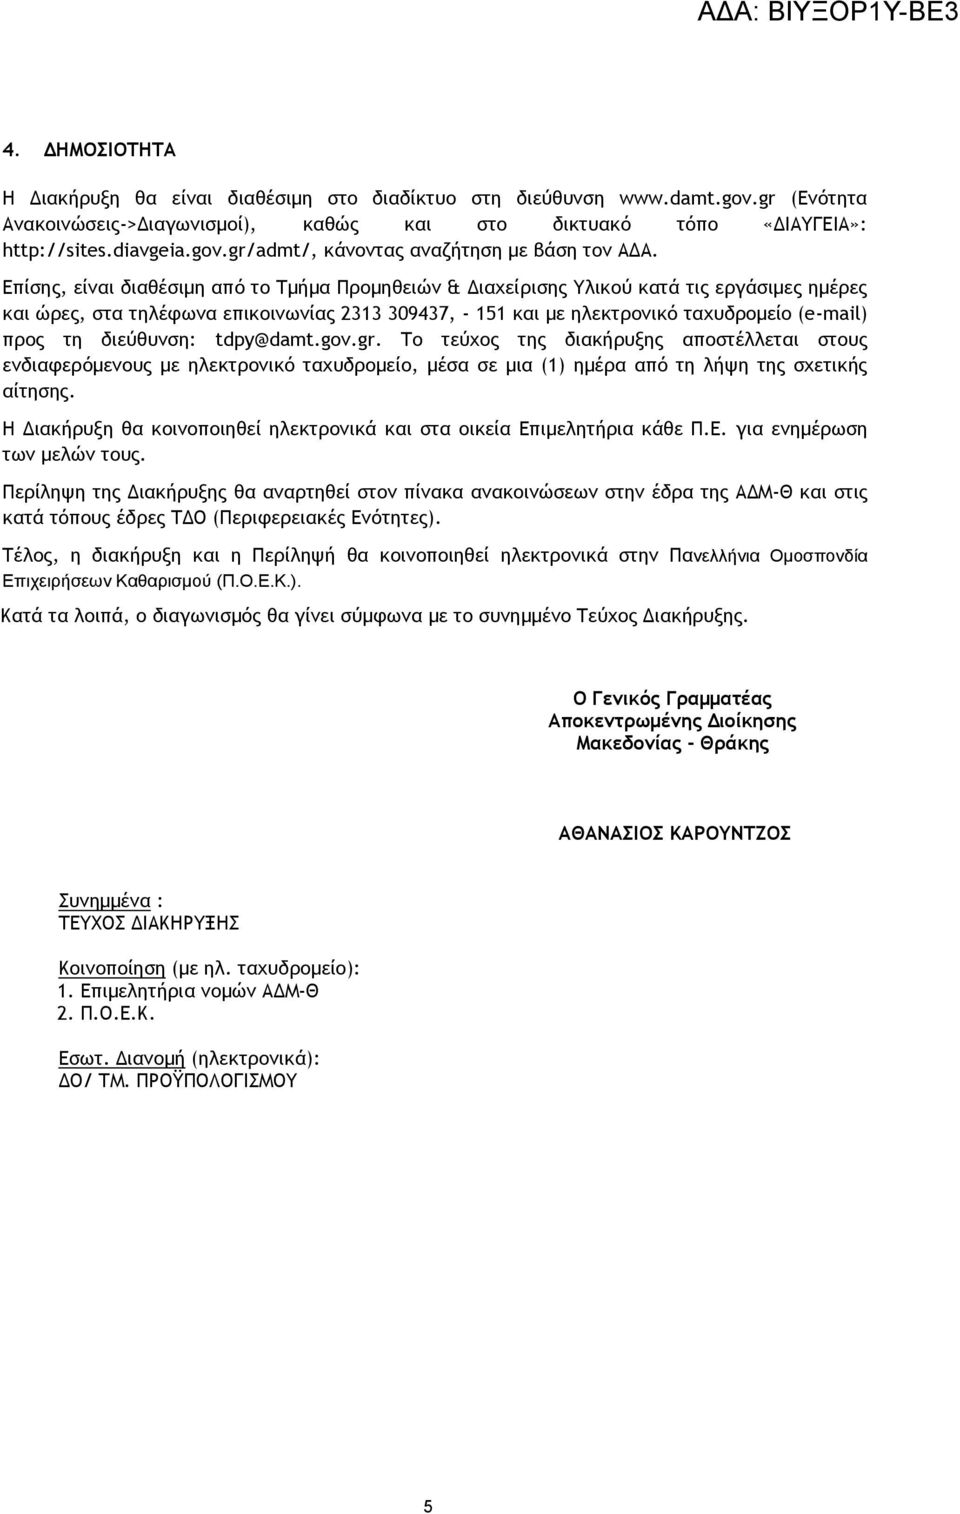 διεύθυνση: tdpy@damt.gov.gr. Το τεύχος της διακήρυξης αποστέλλεται στους ενδιαφερόμενους με ηλεκτρονικό ταχυδρομείο, μέσα σε μια (1) ημέρα από τη λήψη της σχετικής αίτησης.